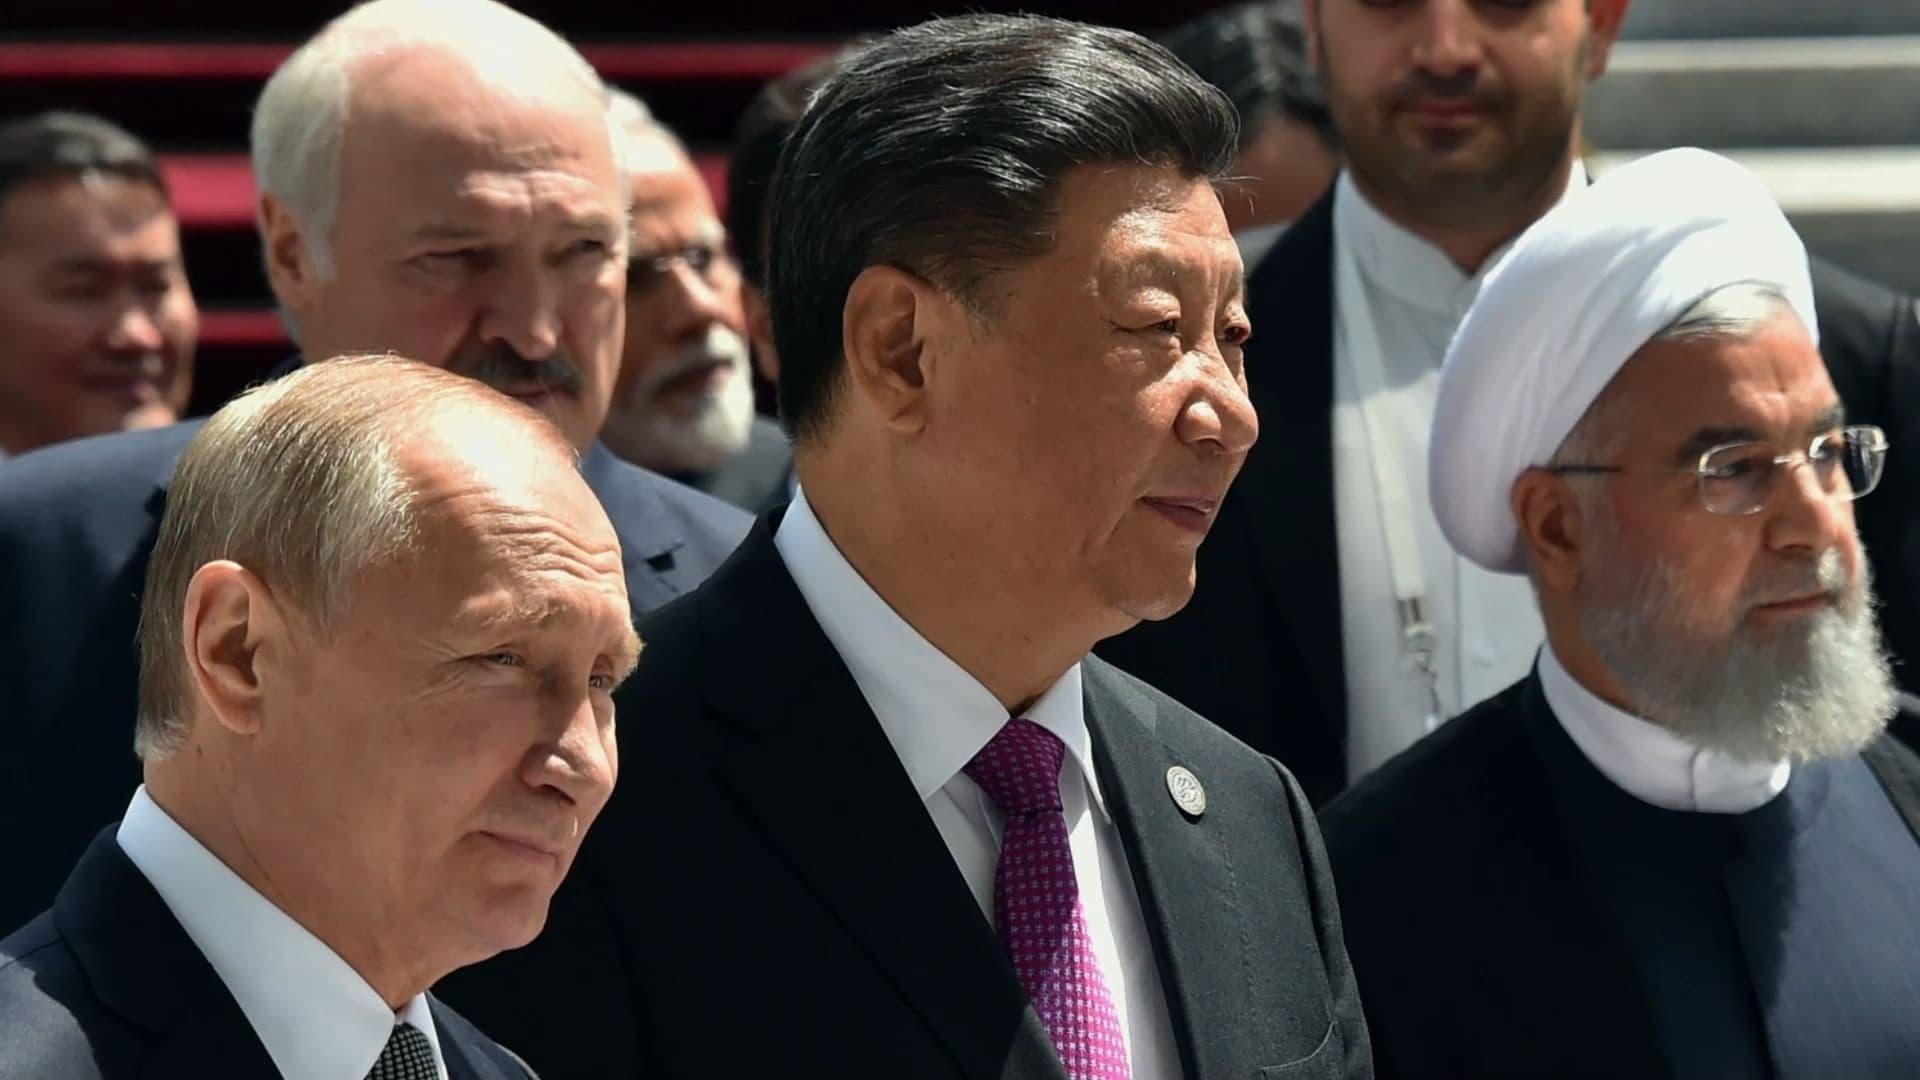 Xi Jinping backdrop